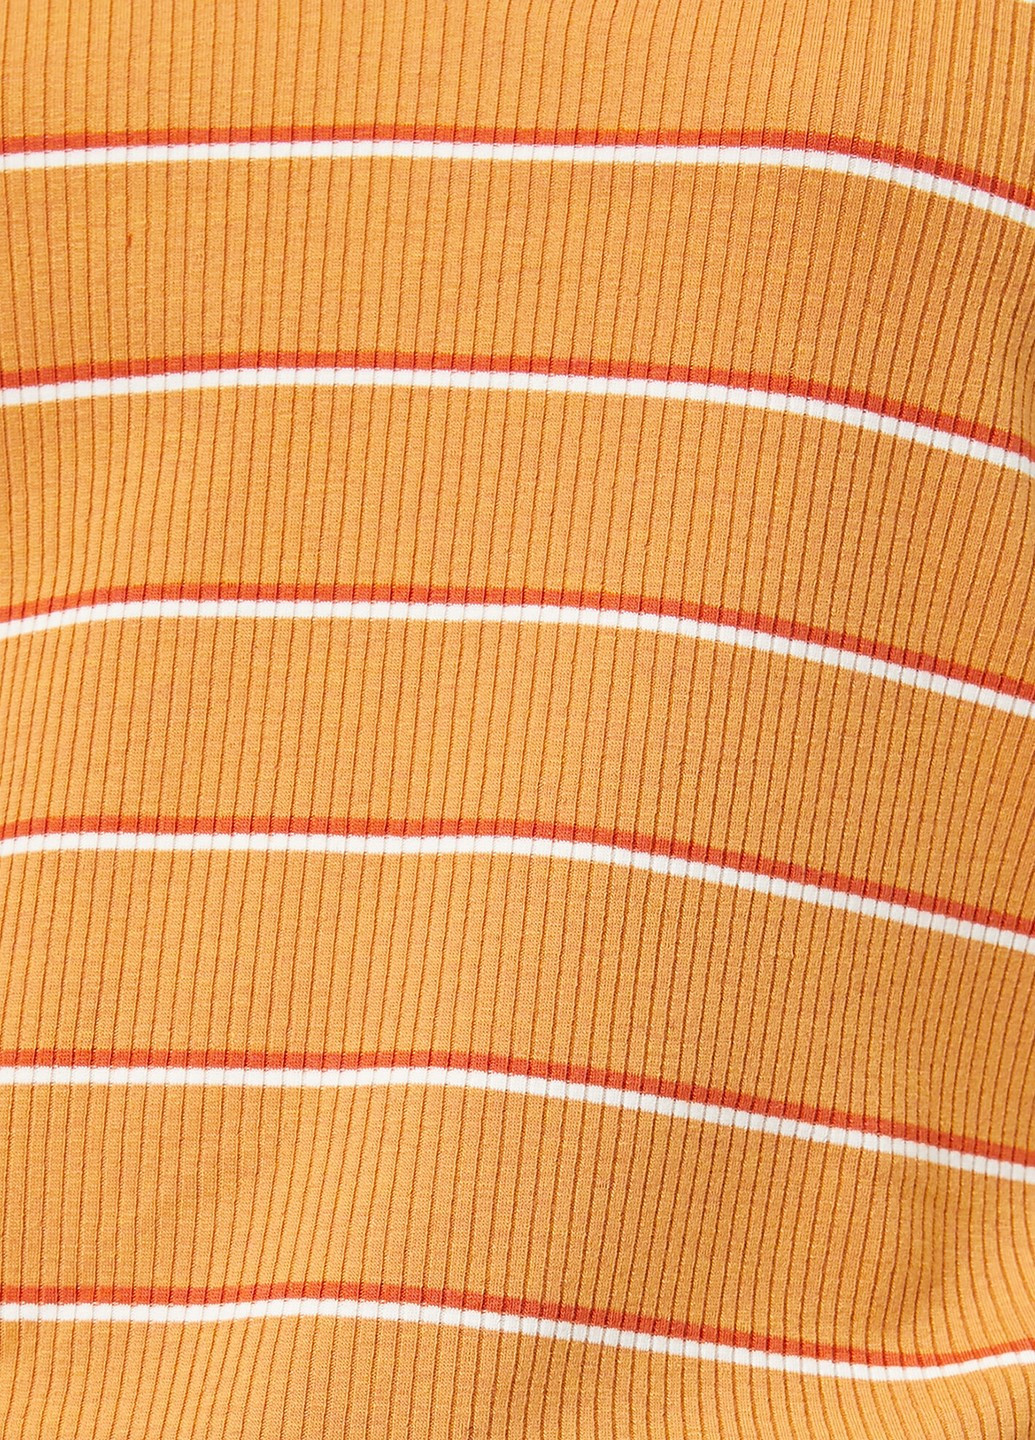 Оранжевая женская футболка-поло KOTON в полоску